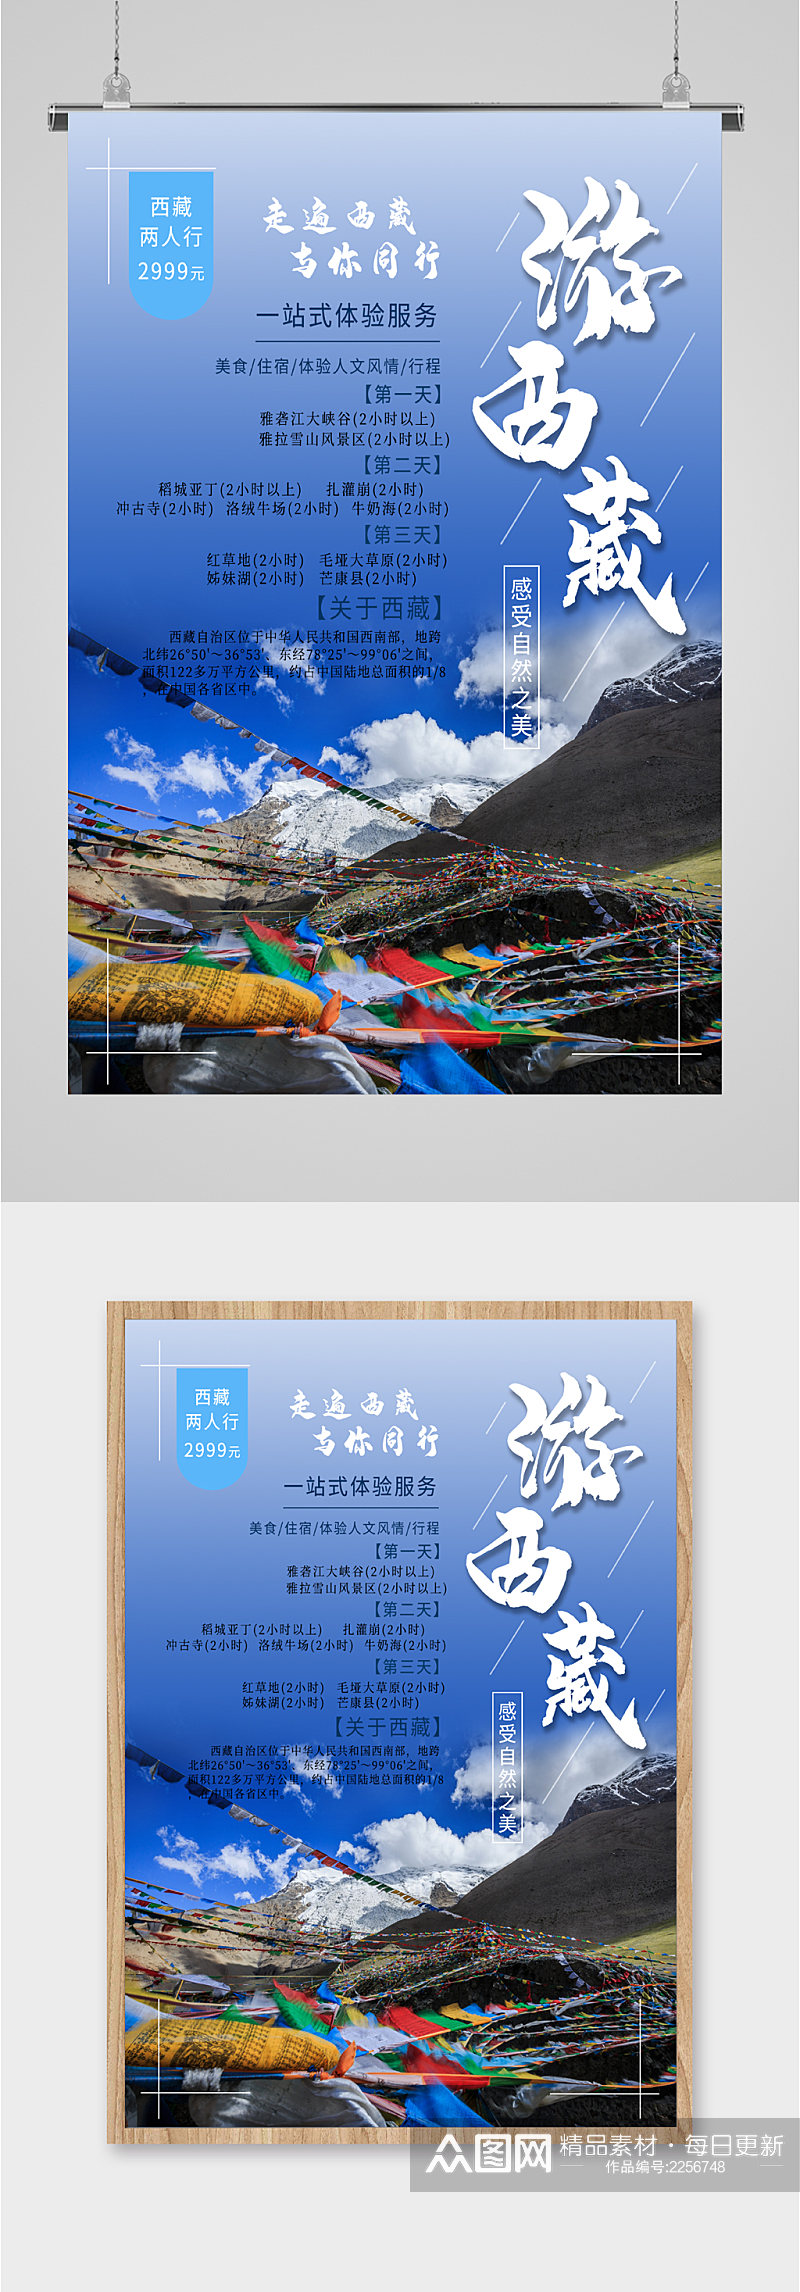 游西藏与你同行旅游海报素材